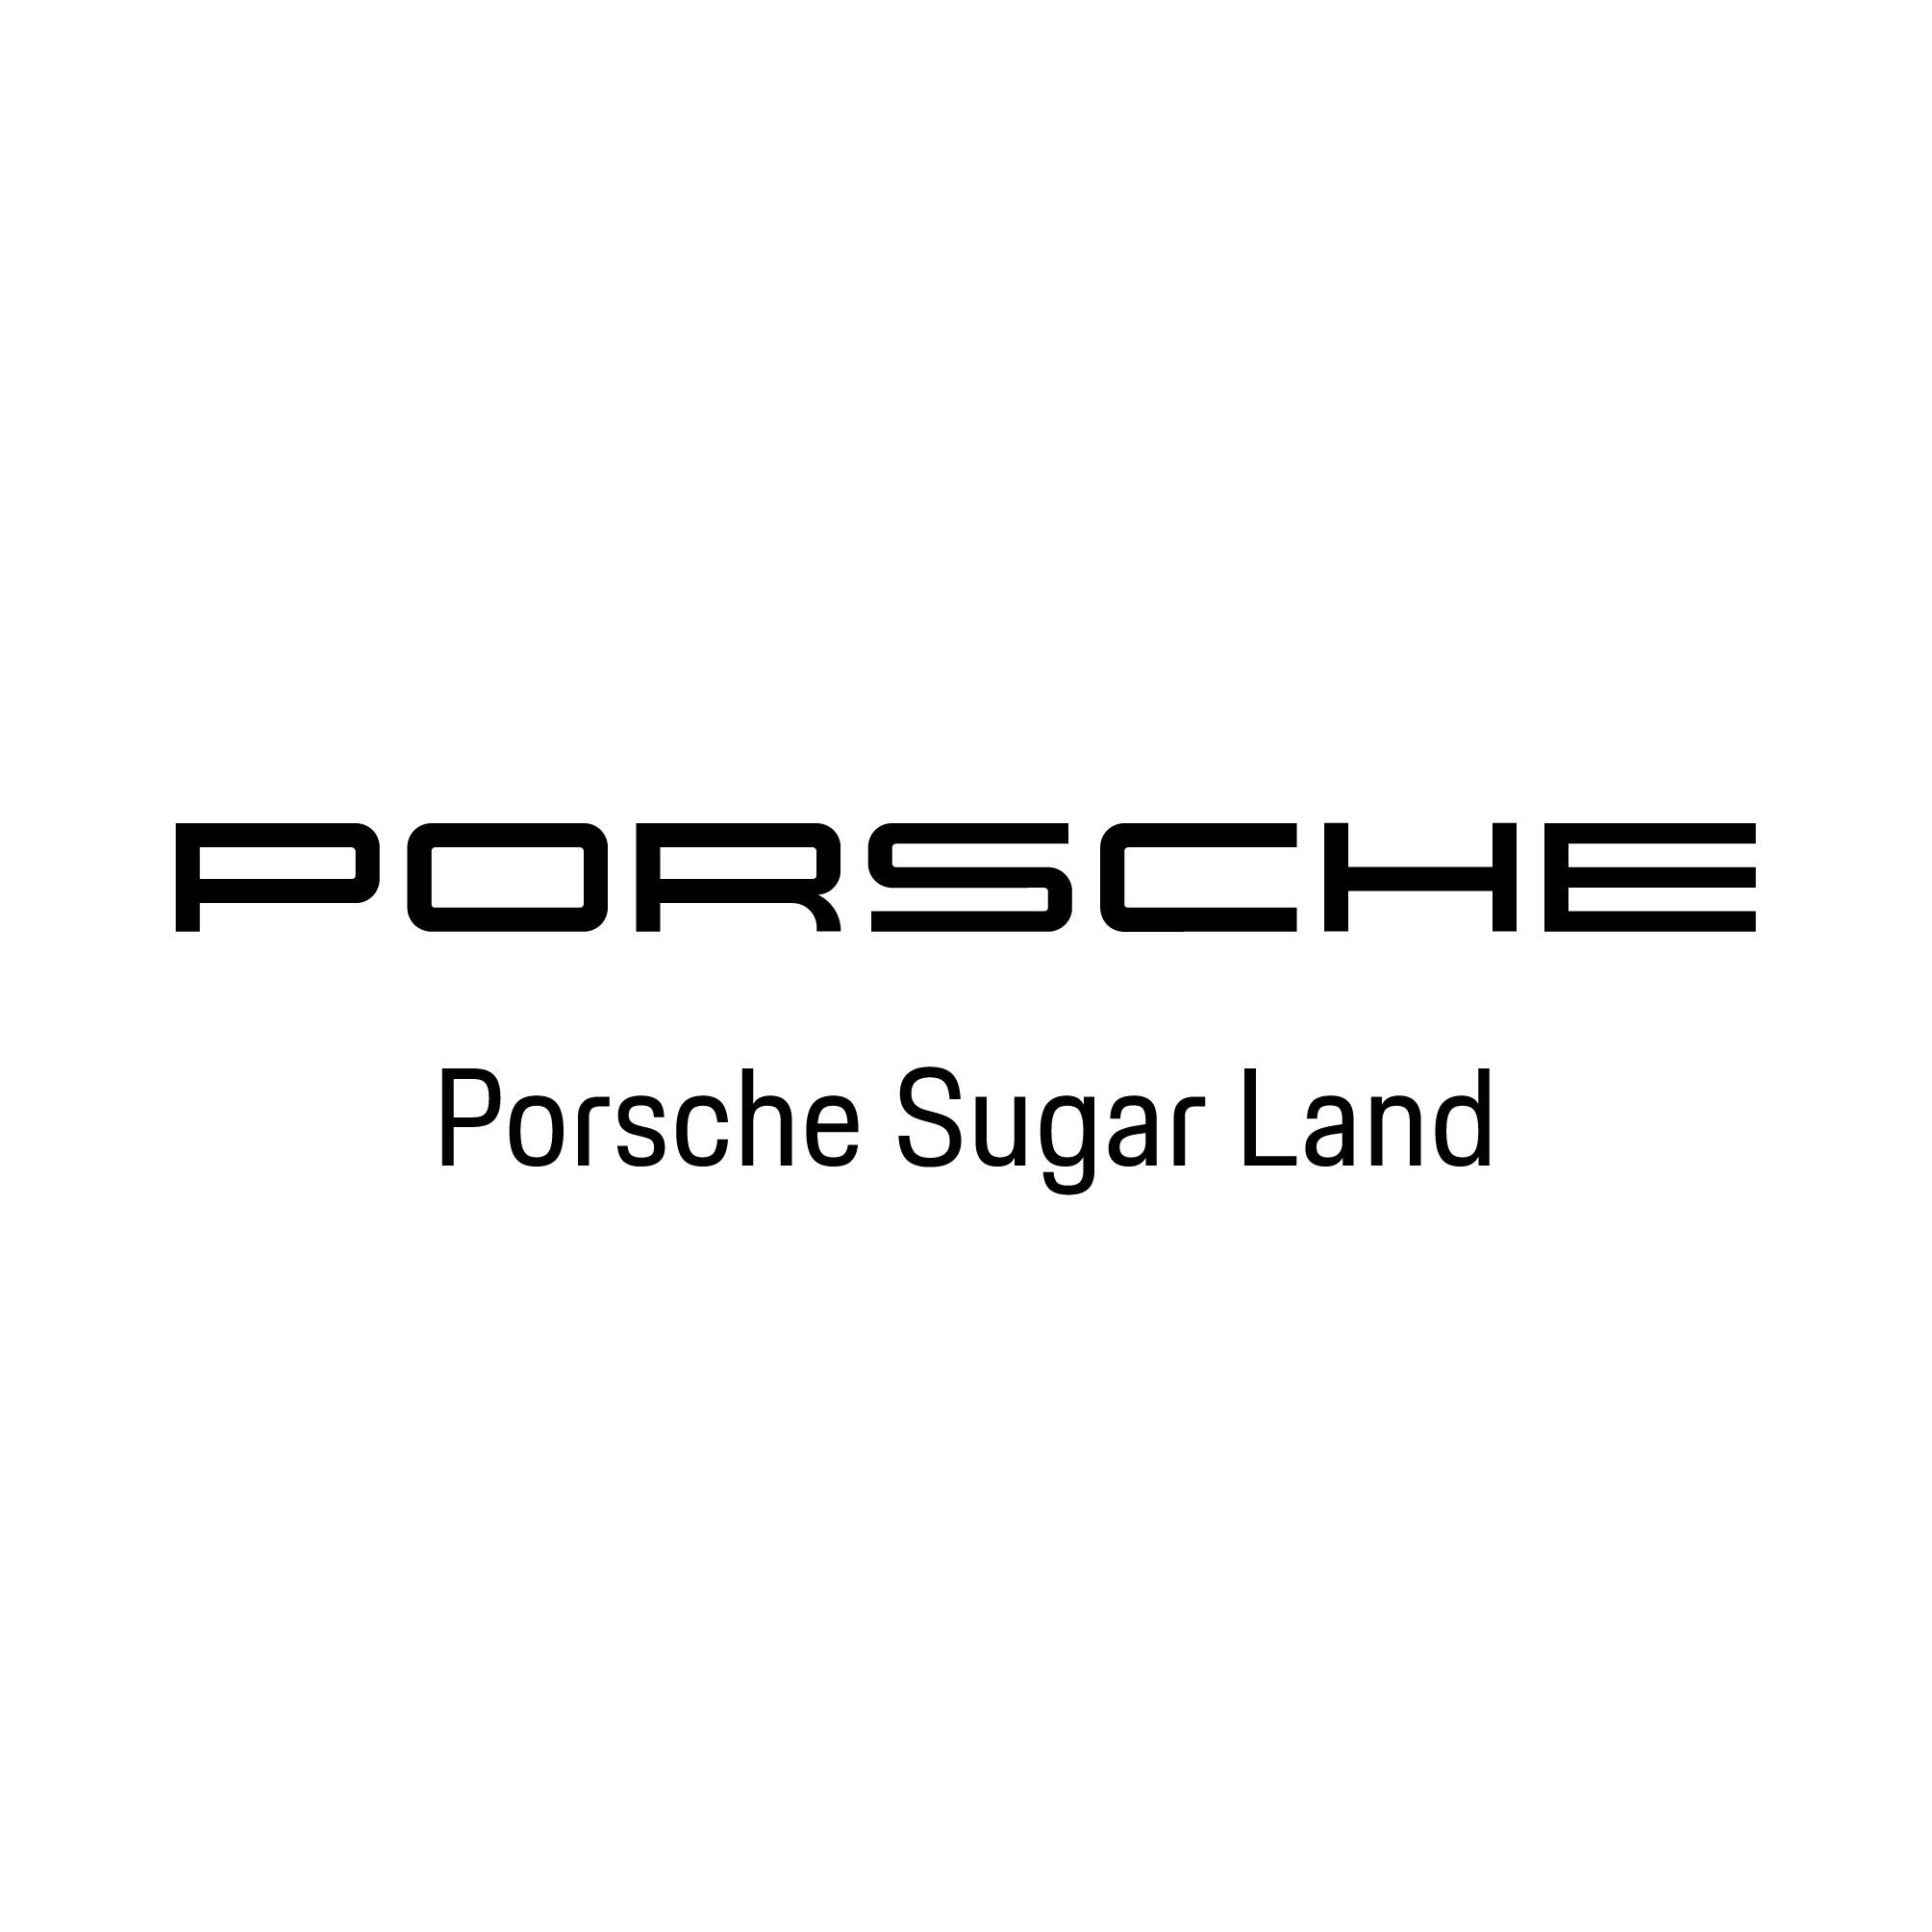 Porsche Sugar Land